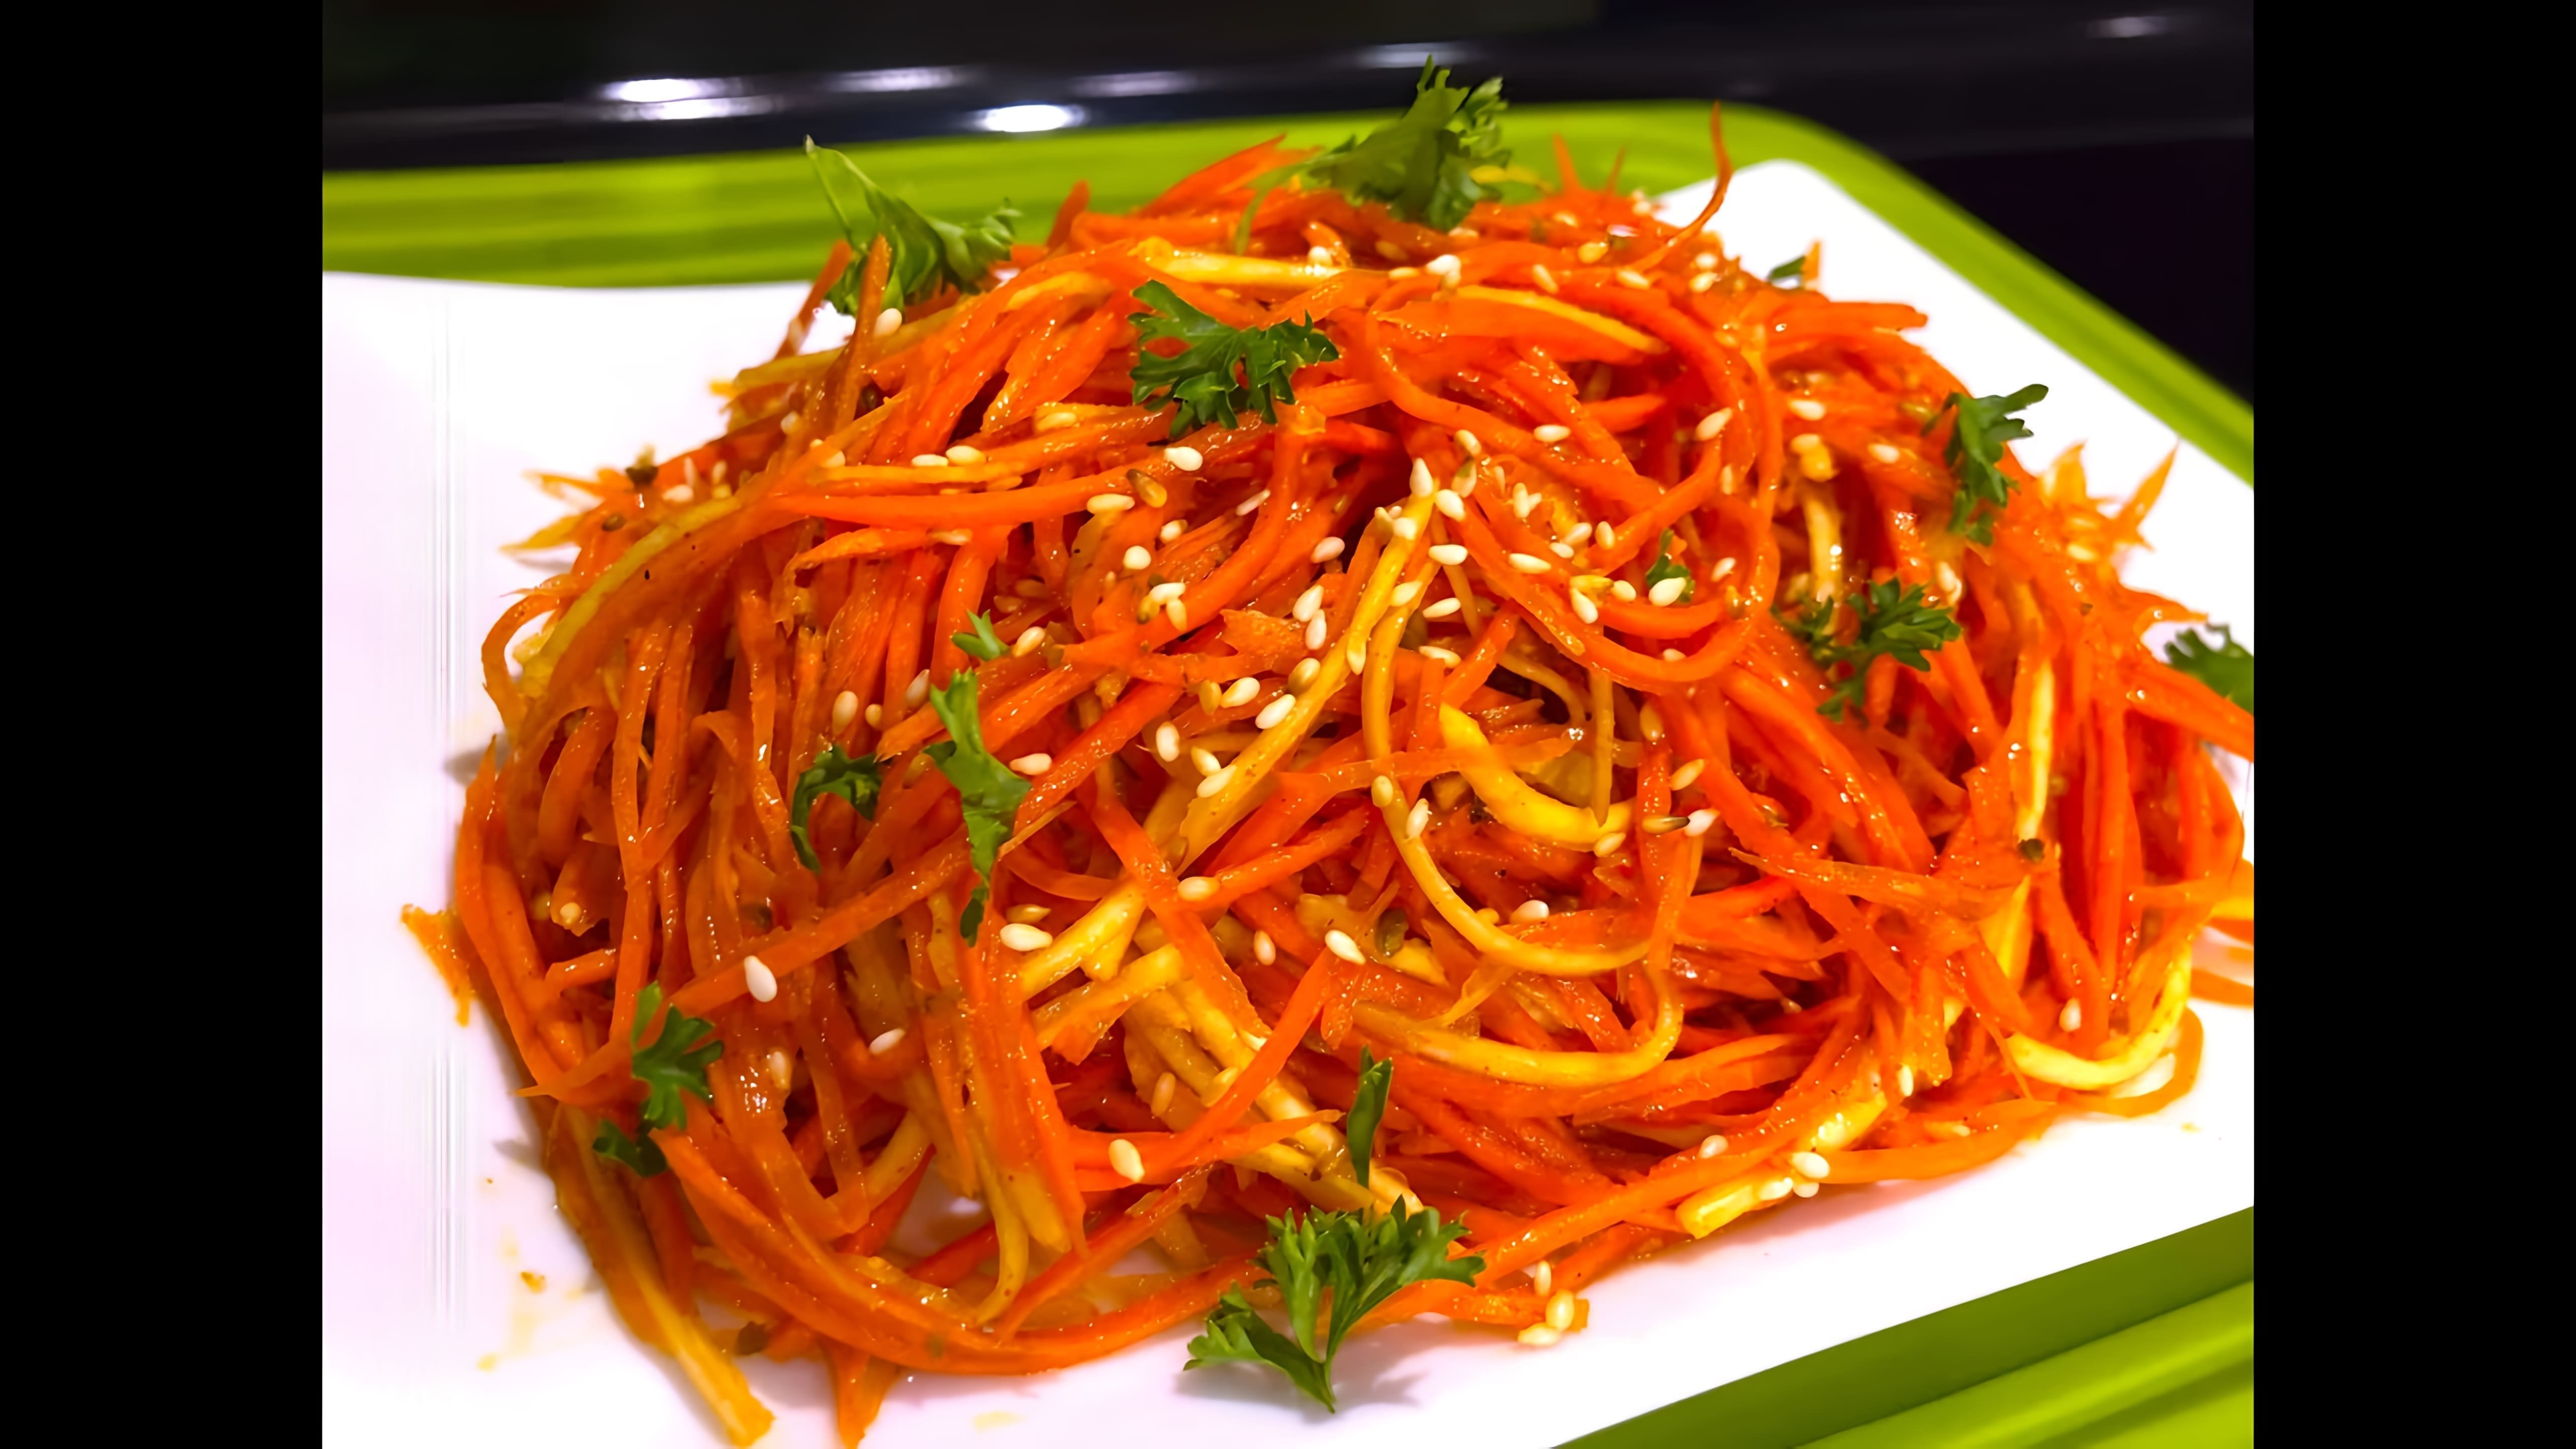 В этом видео демонстрируется процесс приготовления моркови по-корейски